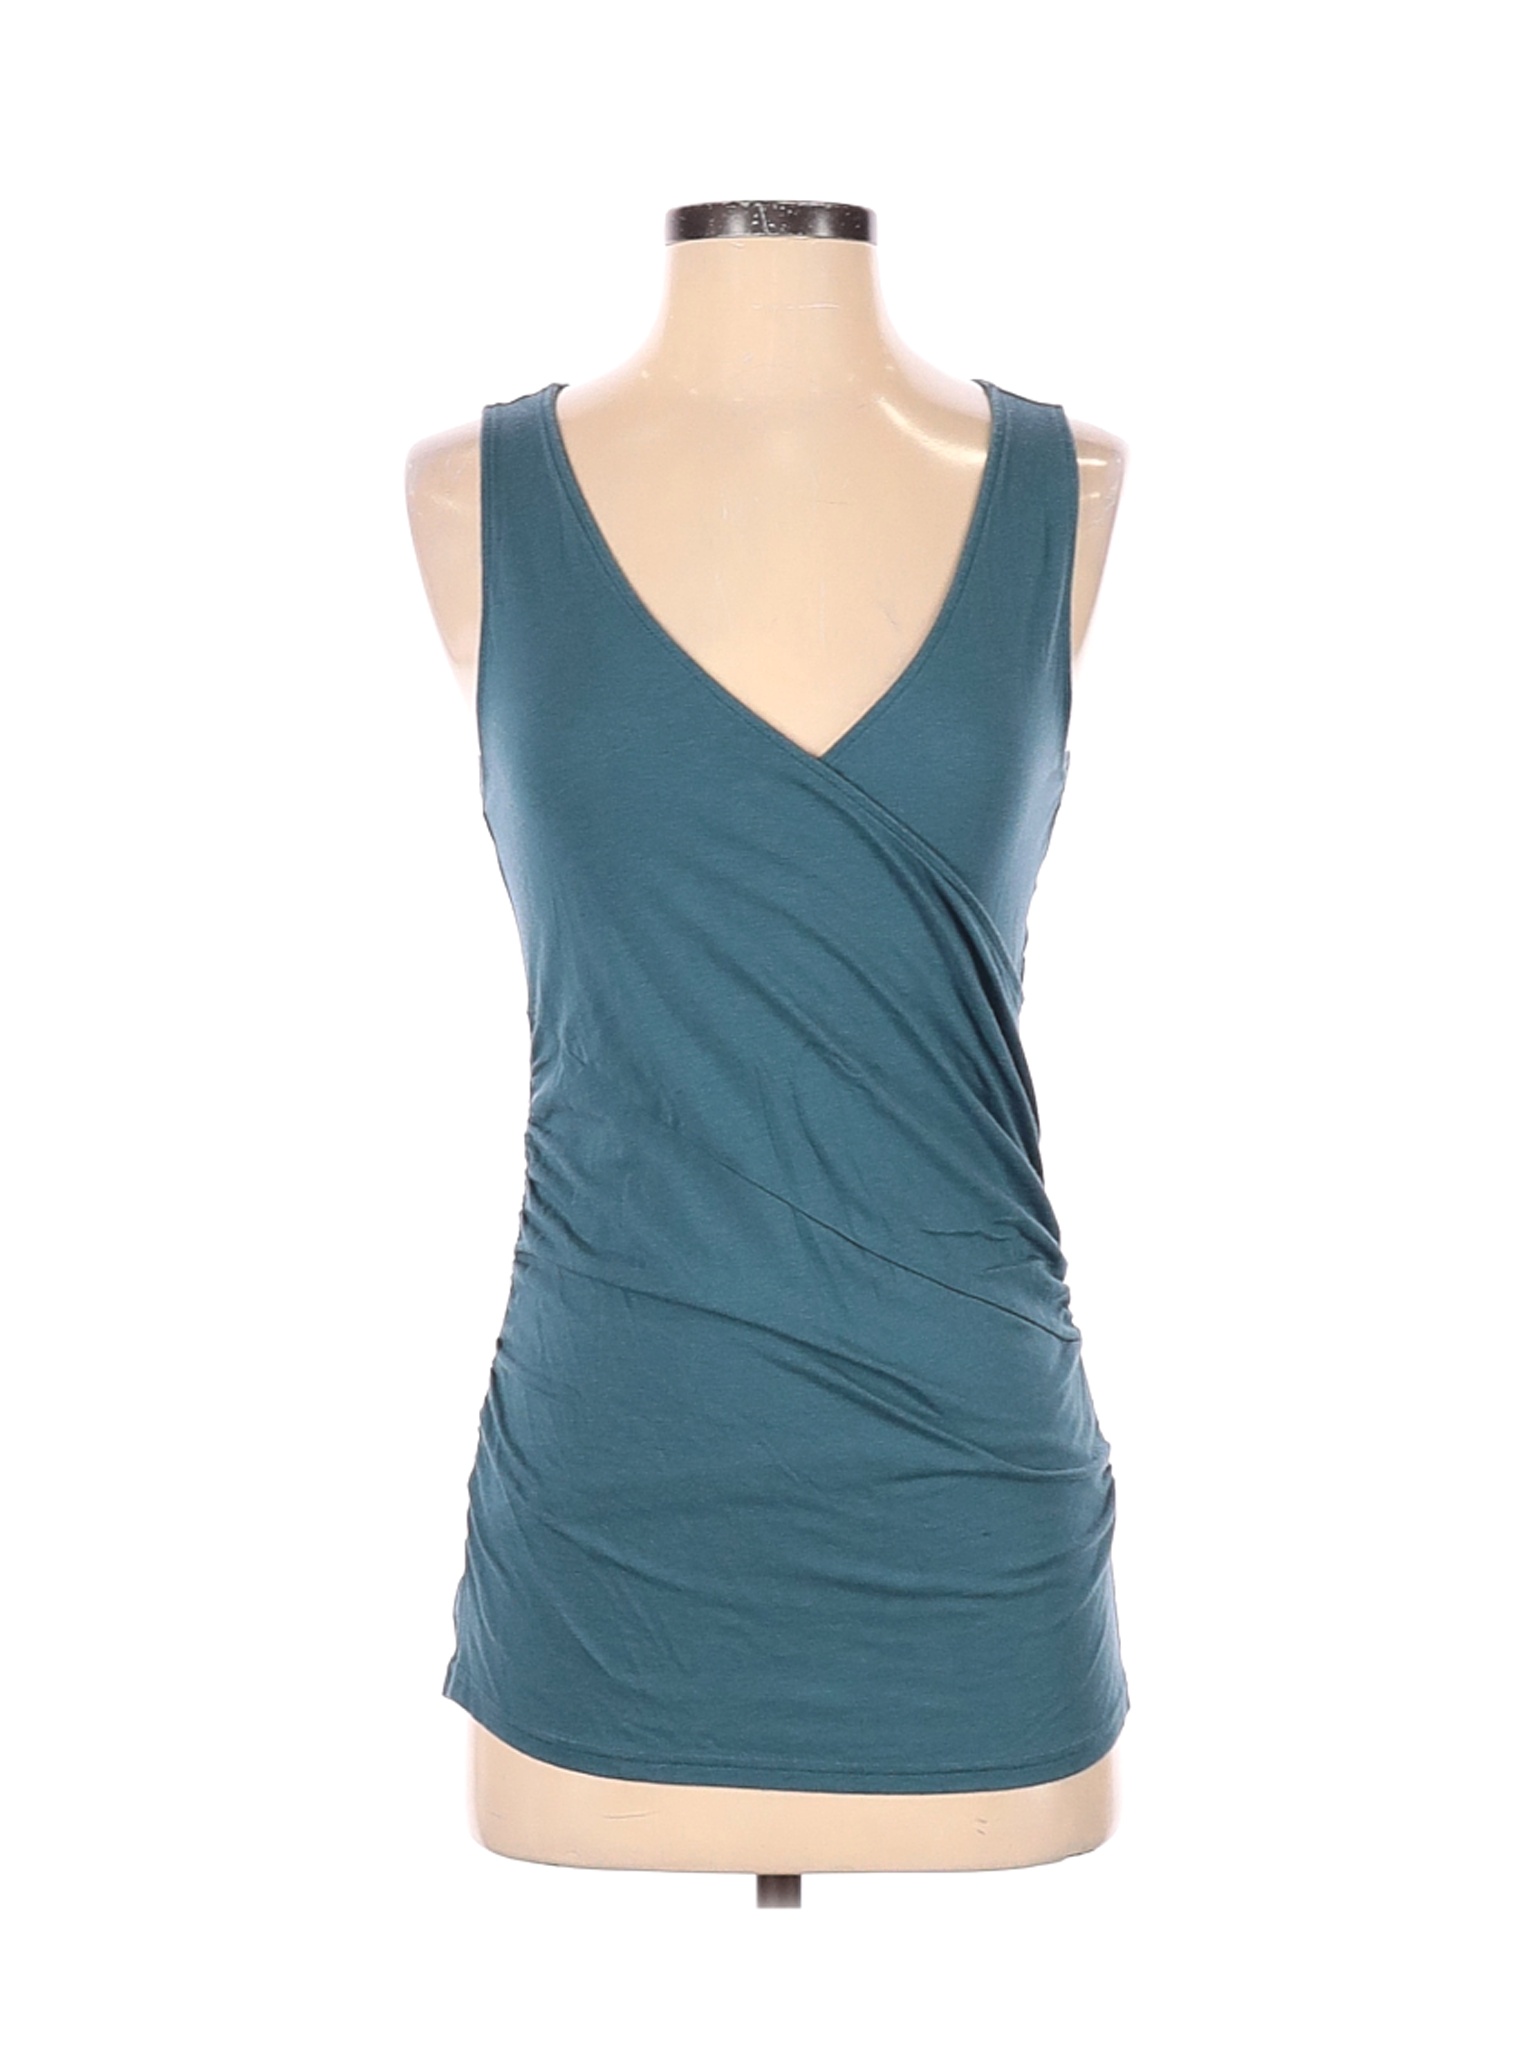 Garnet Hill Women Green Sleeveless Top S | eBay